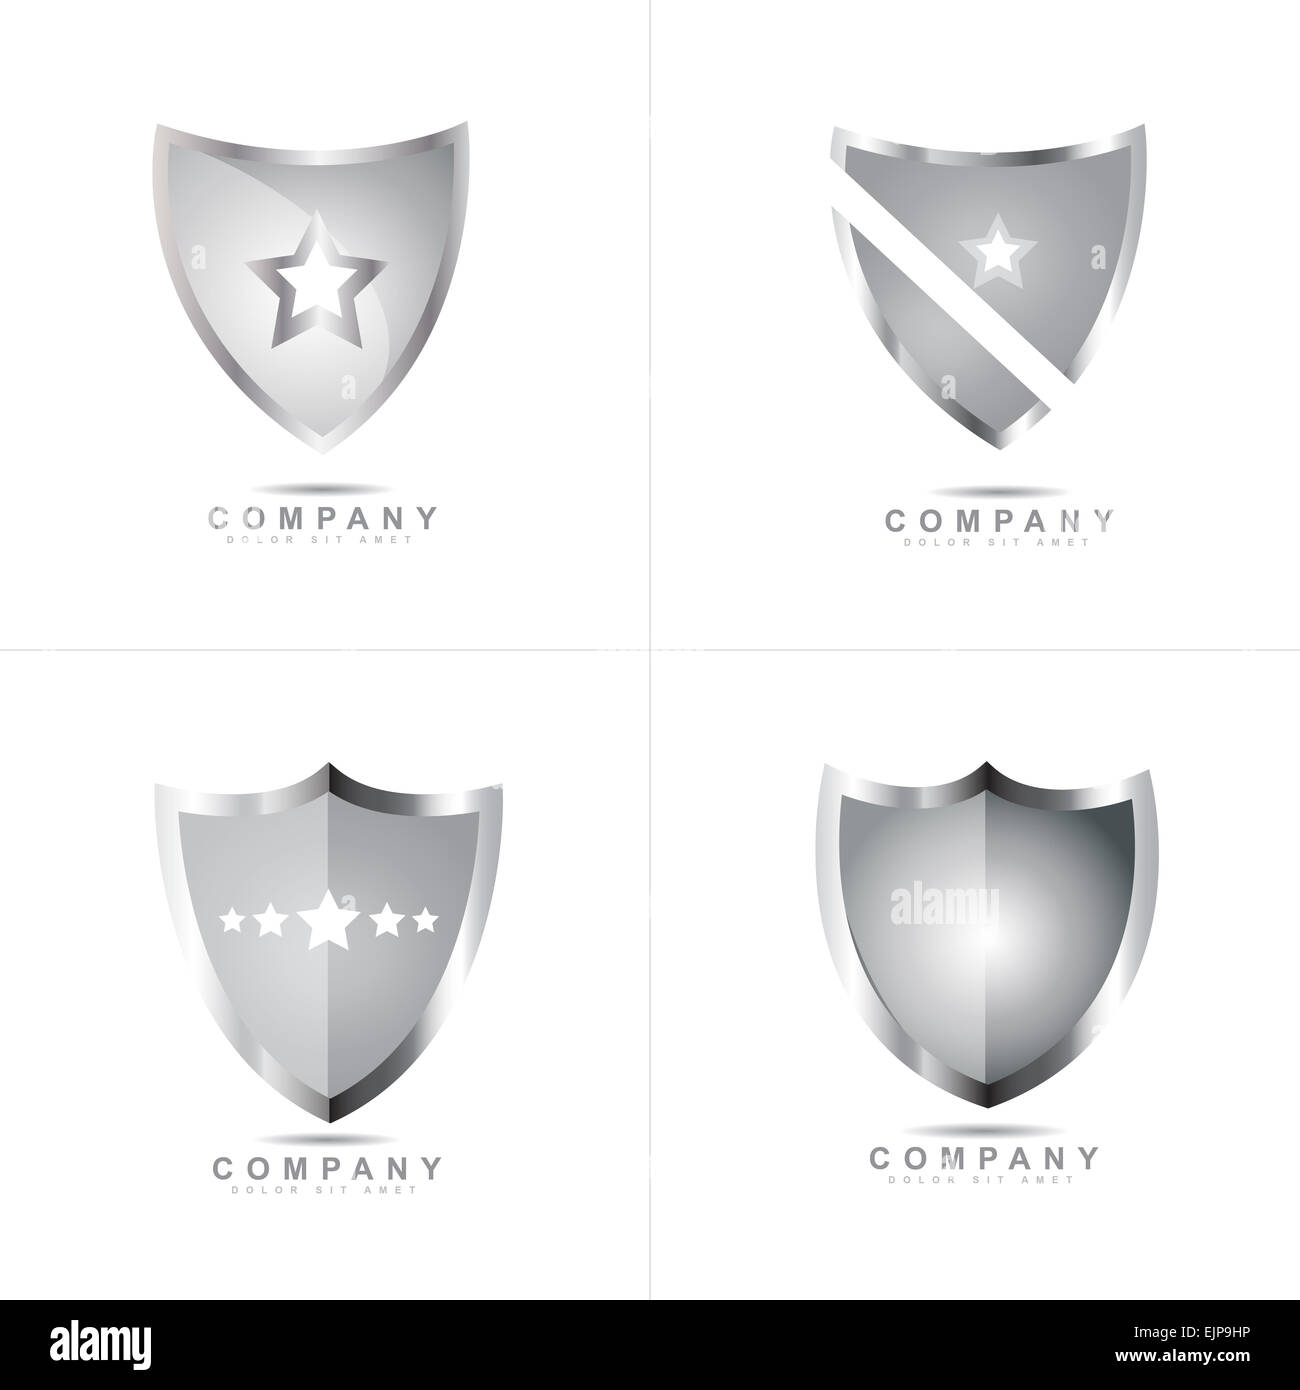 Silver metallic shield logo vector design set Stock Photo